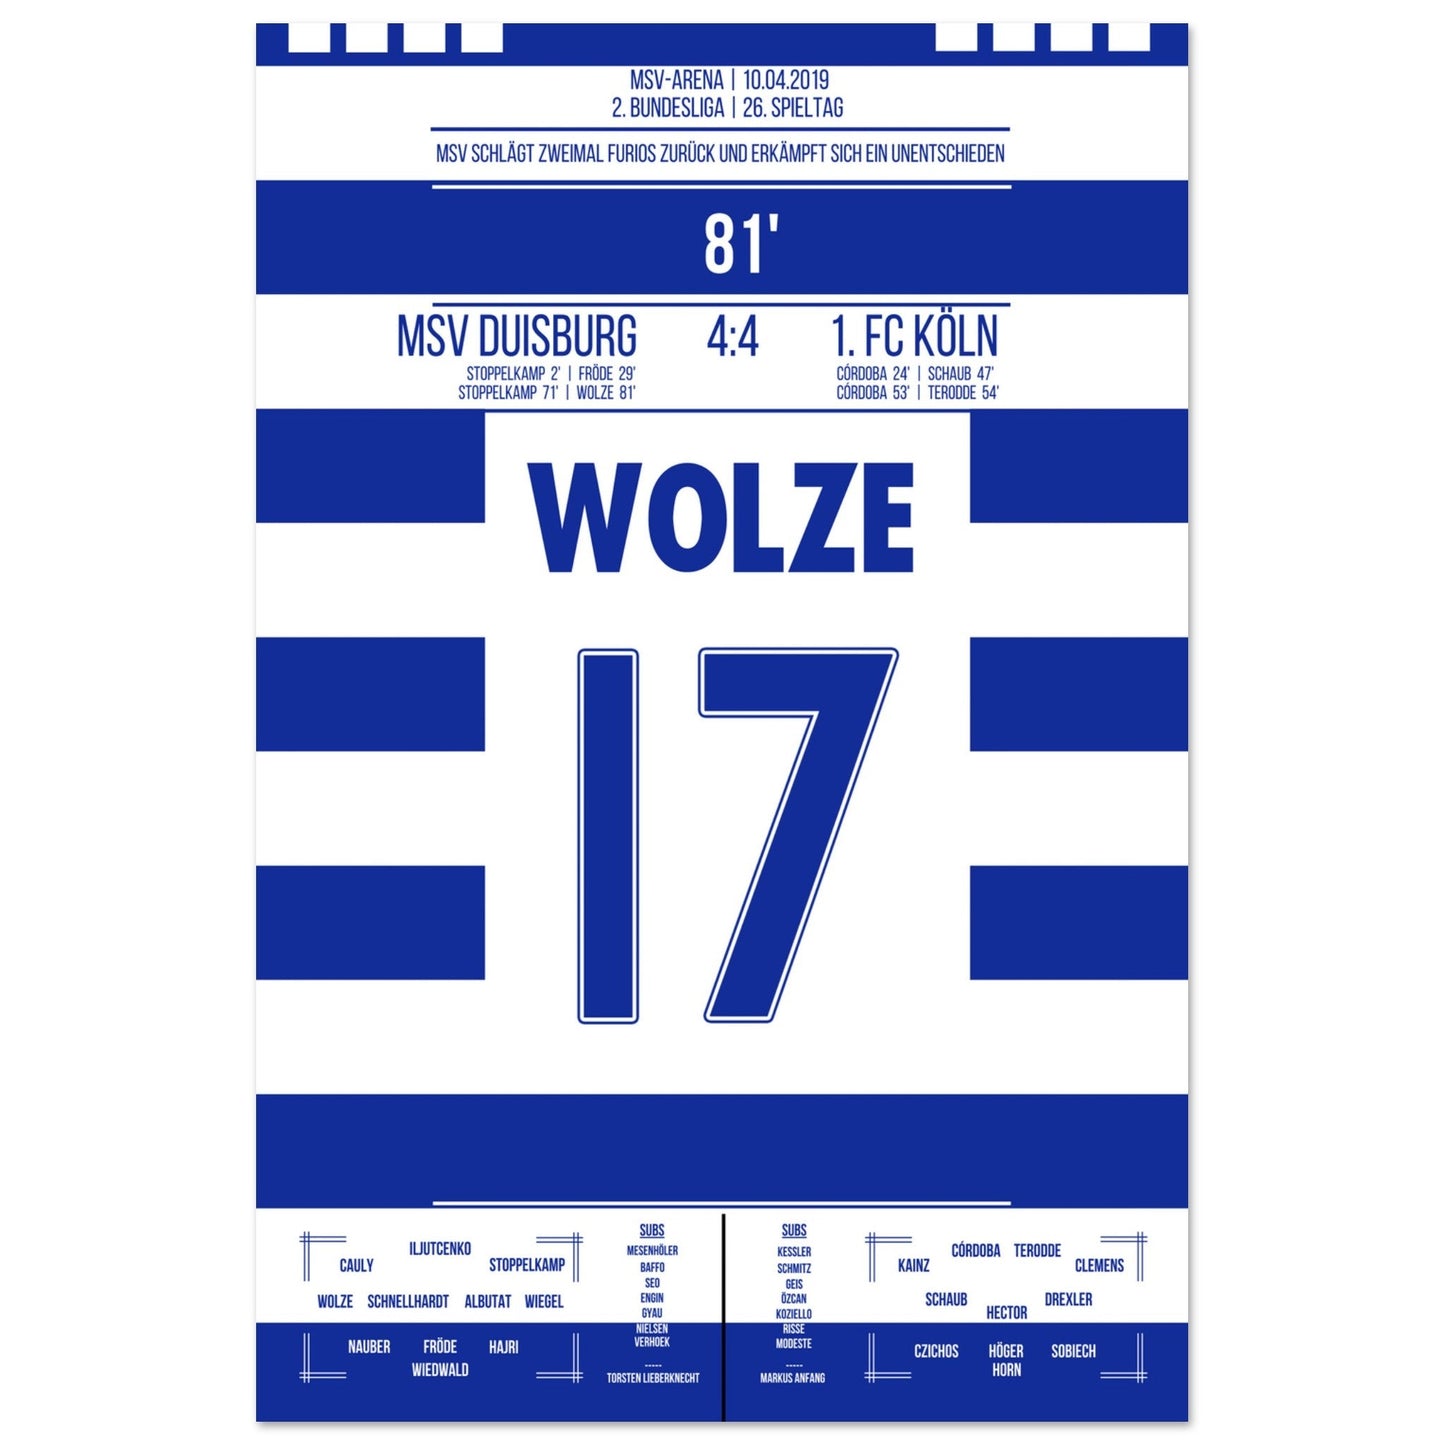 Wolze's Freistoßtor zum Ausgleich bei wildem 4:4 gegen Köln in 2019 60x90-cm-24x36-Ohne-Rahmen